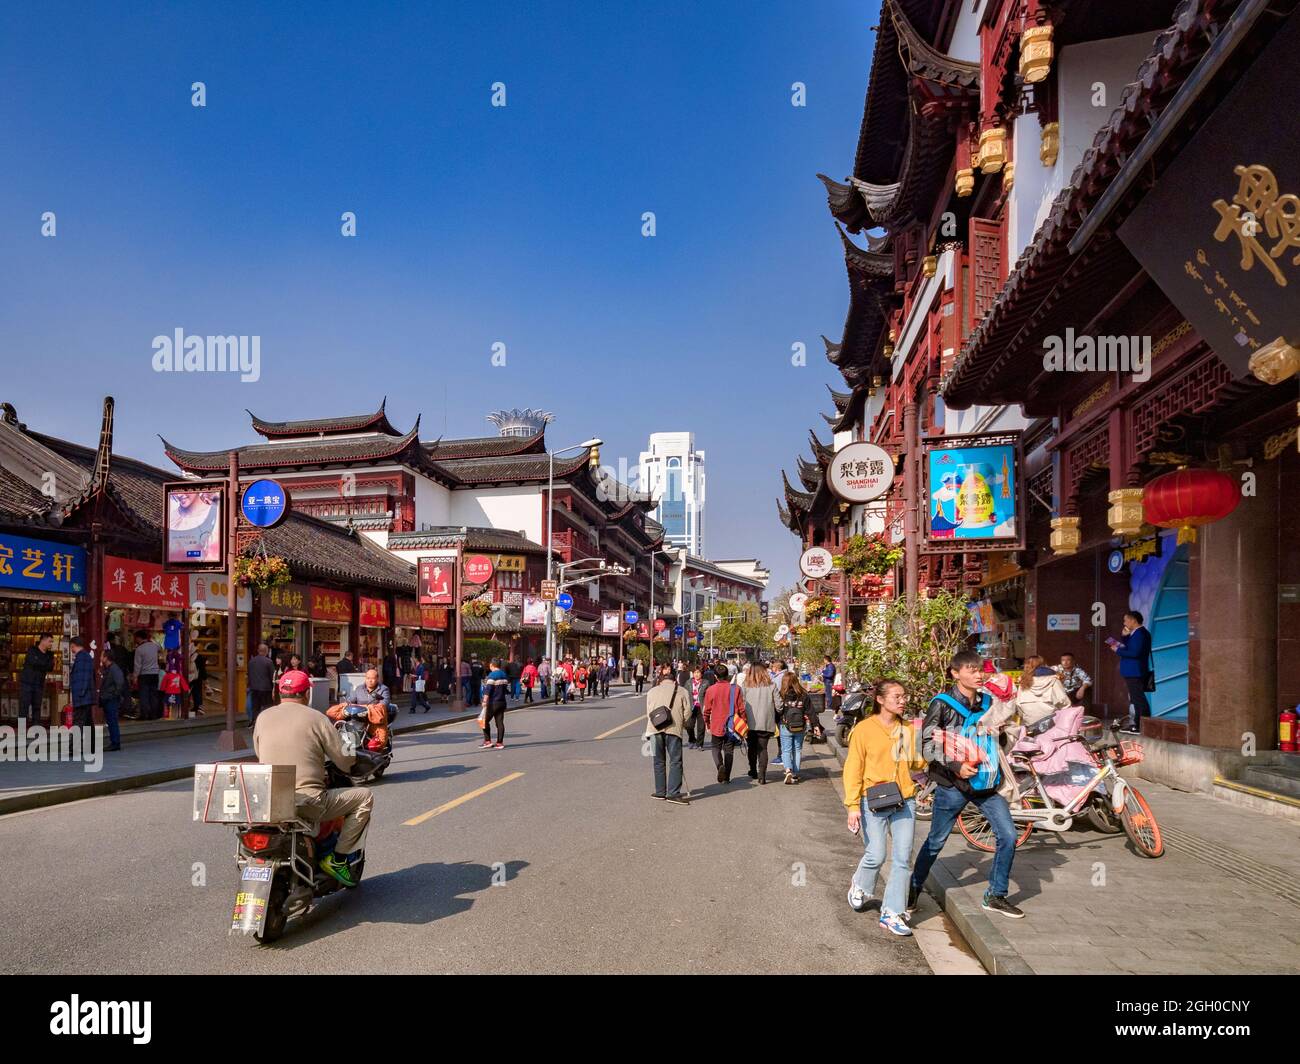 29. November 2018: Einkaufen in der geschäftigen Nanjing Road West, mit Menschenmassen, die das Heritage Area genießen. Blauer Himmel. Stockfoto